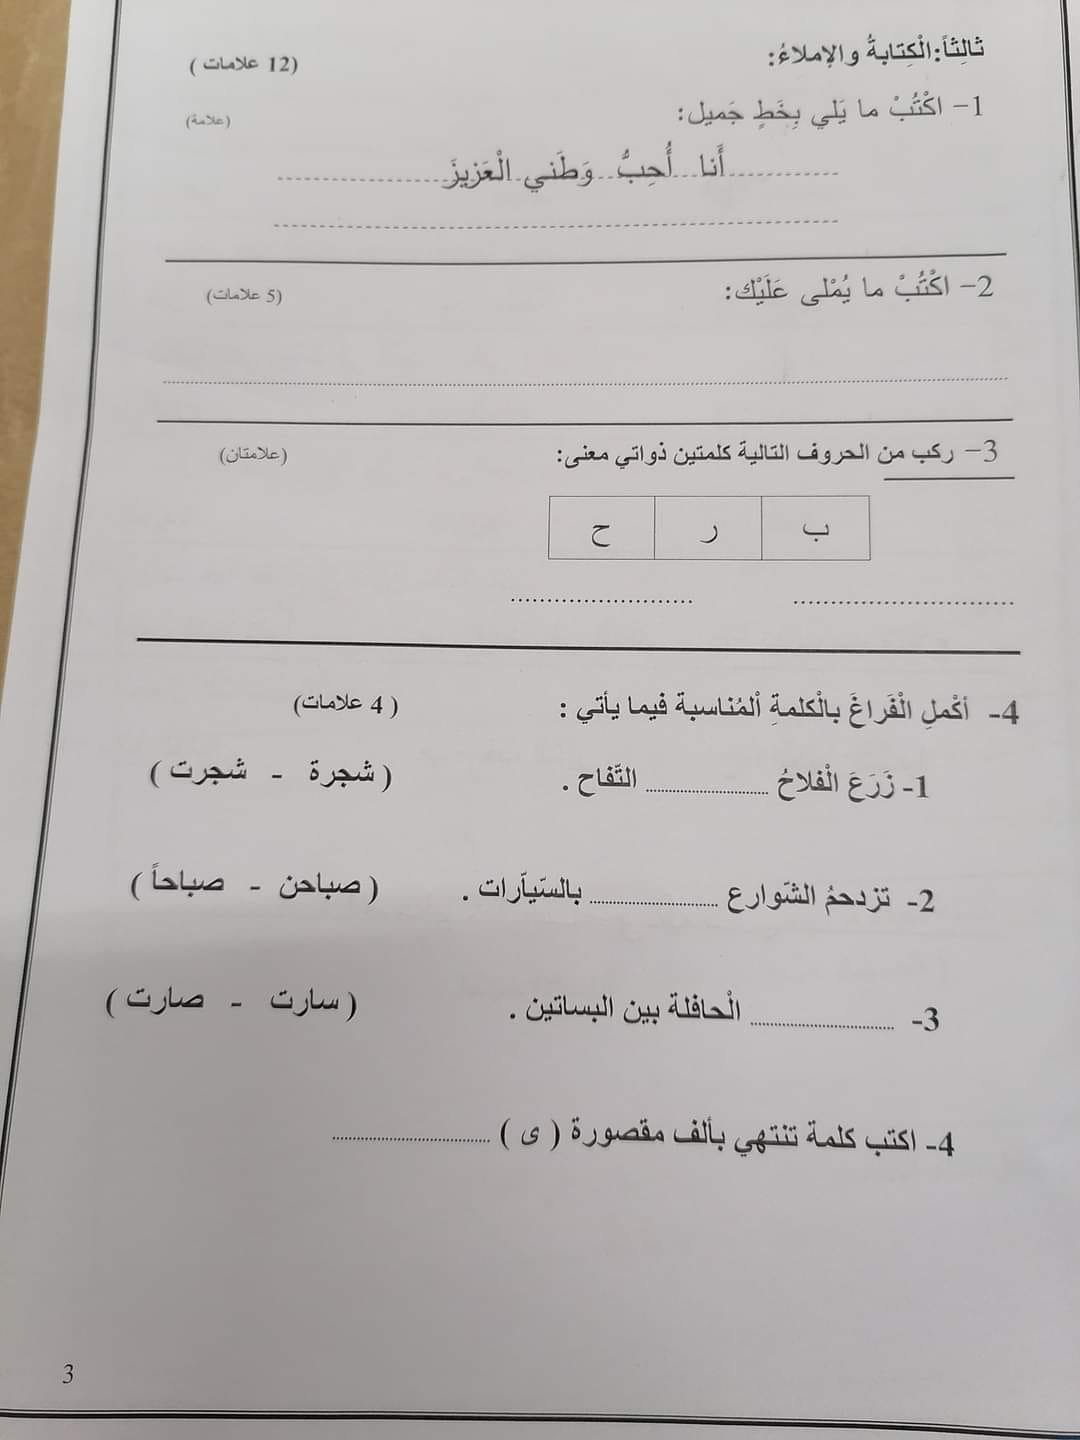 6 صور امتحان نهائي لمادة اللغة العربية للصف الثاني الفصل الاول 2021.jpg